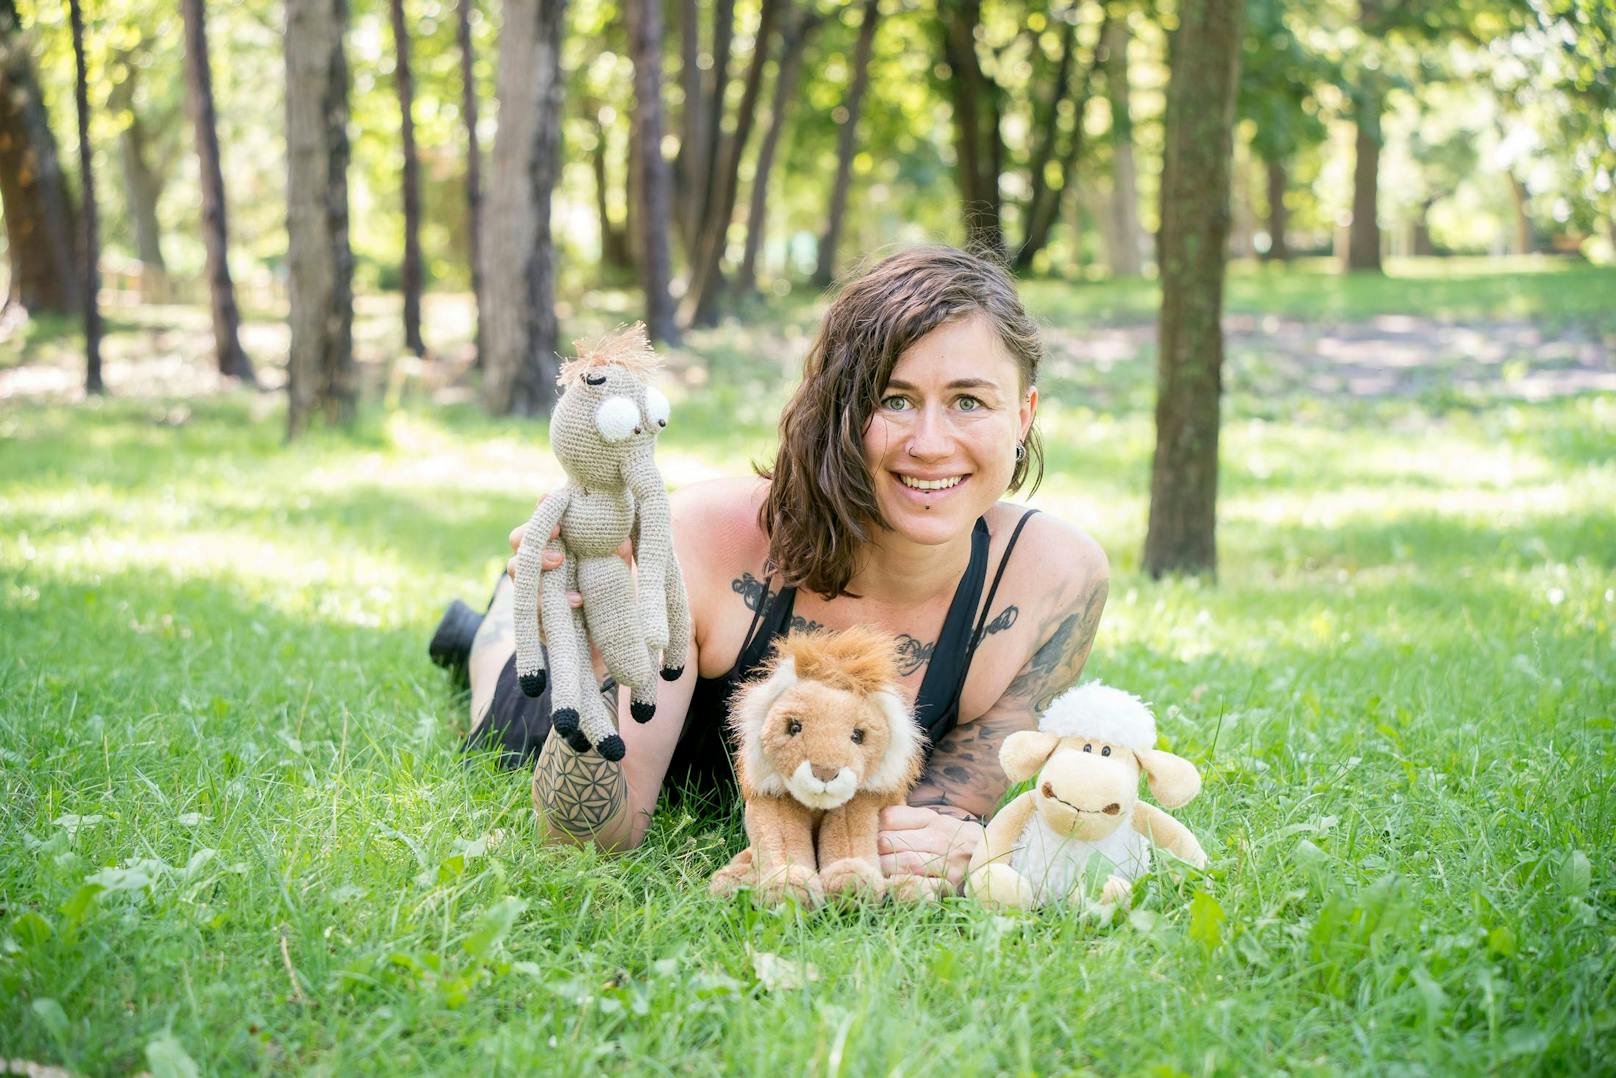 Mücke, Löwe und Schaf sind bei den Trainings von Anne Matthes (32) immer mit dabei: Spielerisch vermittelt sie Kindern Strategien, um mit Mobbing besser umgehen zu können.